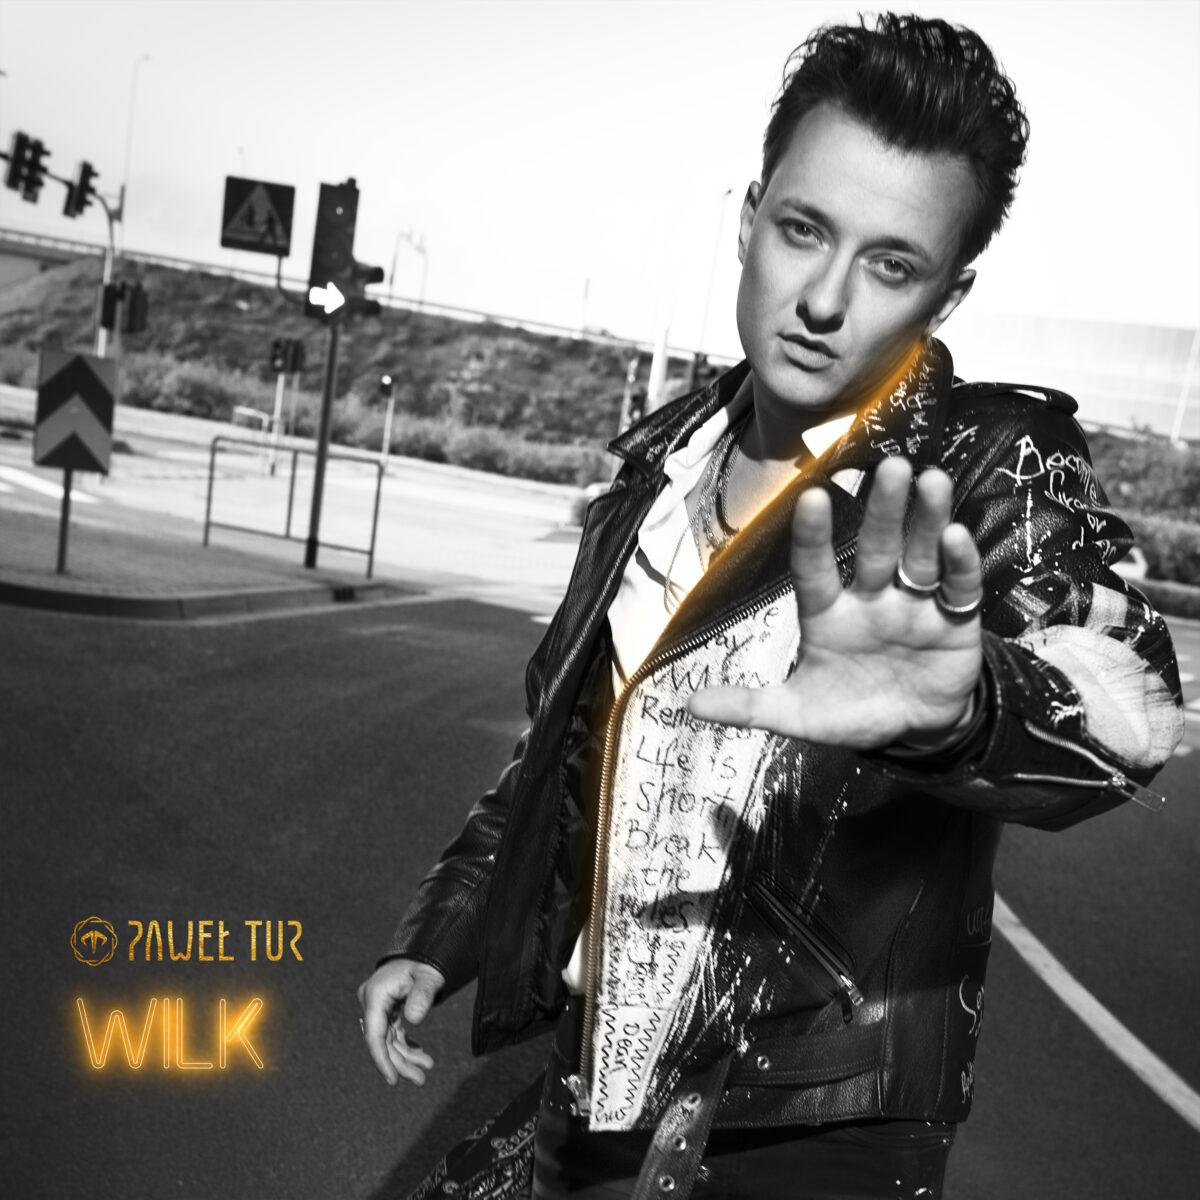 Premiera pierwszego solowego albumu Pawła Tura – Wilk już 20 października 2020 roku.